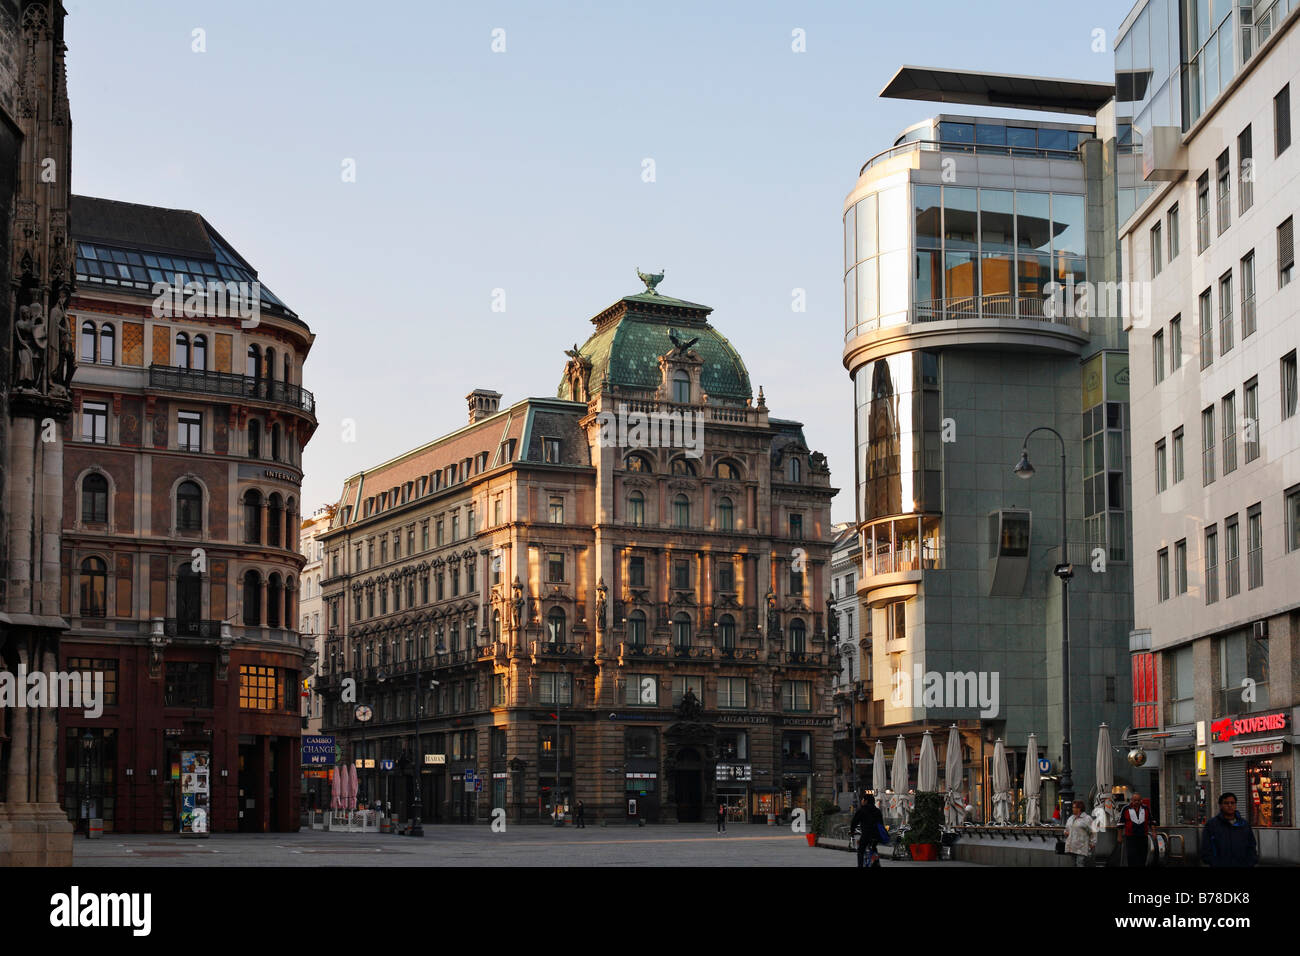 Stock-im-Eisen-Platz con el banco central, en el oriente, y Haas-House, derecha, Viena, Austria, Europa Foto de stock